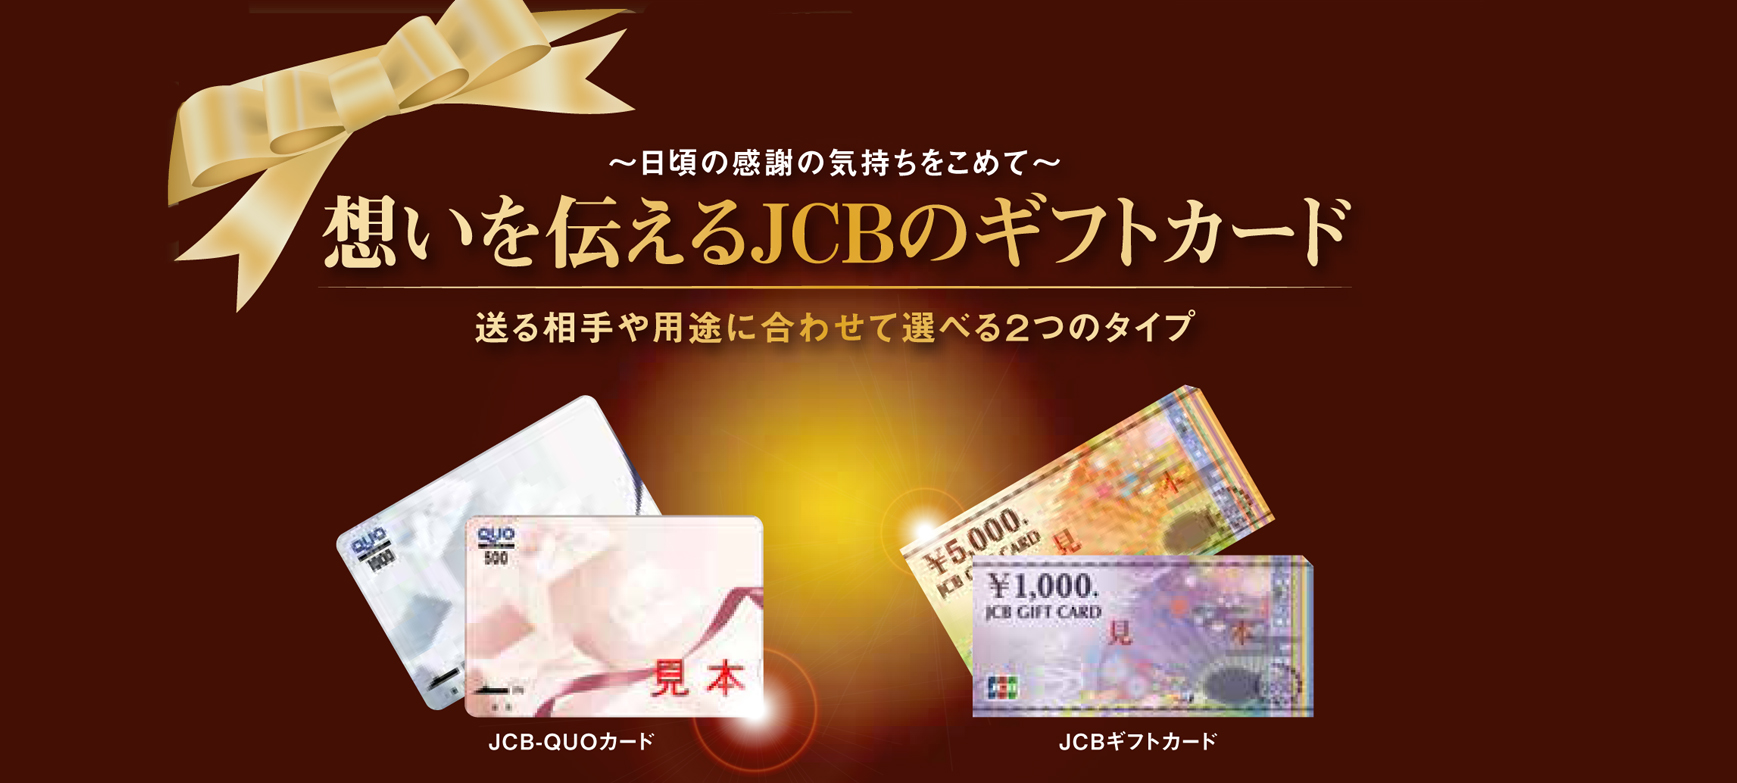 各種ギフトカードのお求めは秋田JCBカードで。